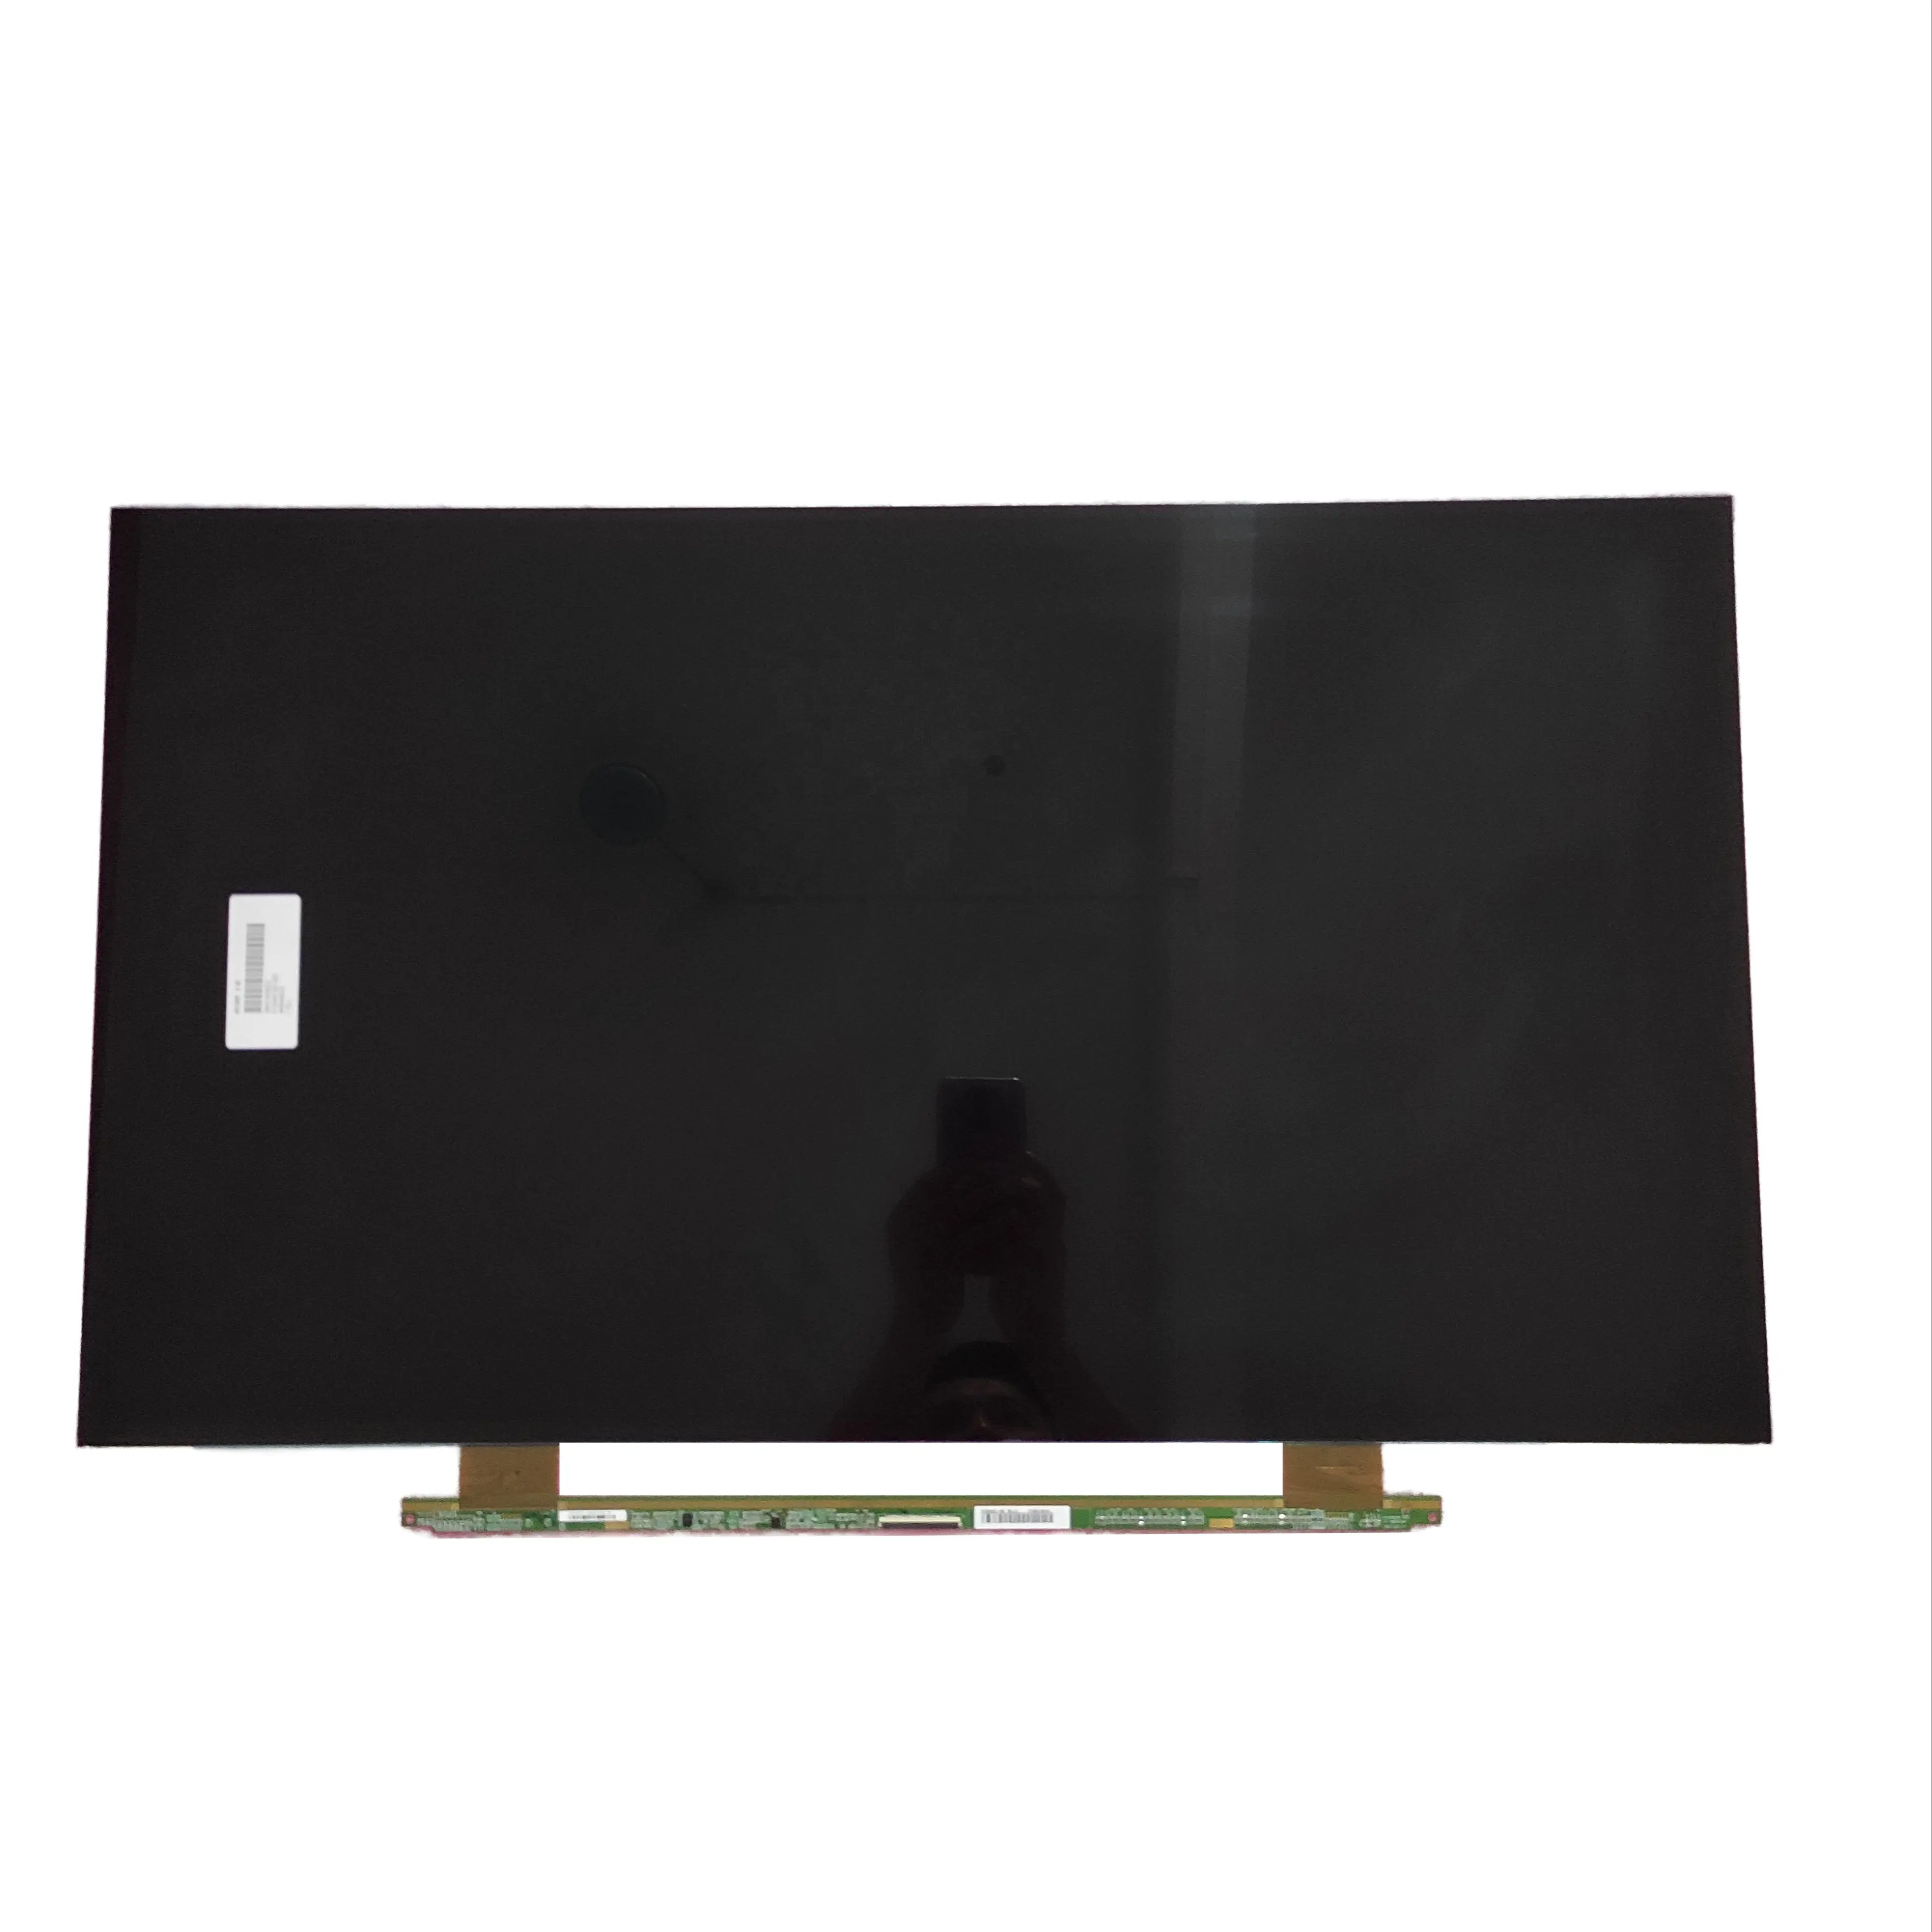 HV320WHB-N56 60 핀 BOE 32 "인치 LCD LED TFT 디스플레이 오픈 셀 TV 화면 예비 패널 교체 부품 TV 수리